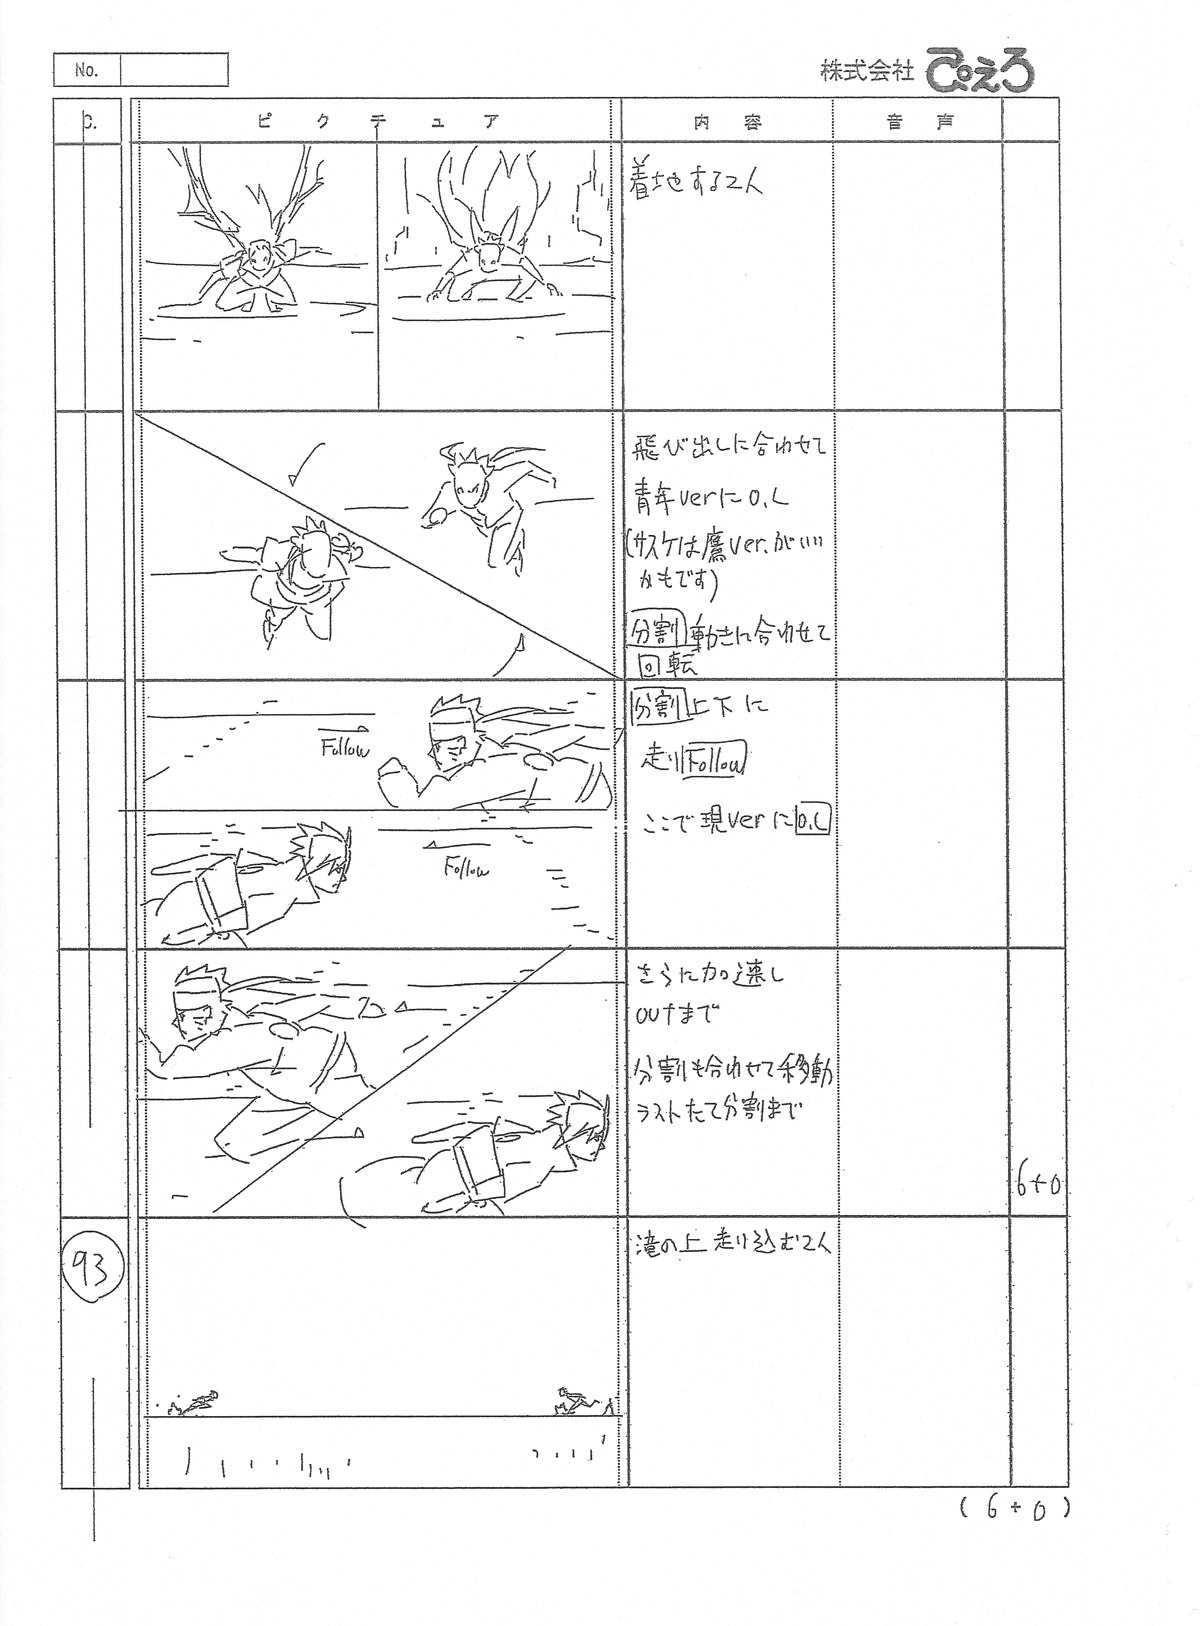 hiroyuki_yamashita naruto naruto_shippuuden production_materials storyboard